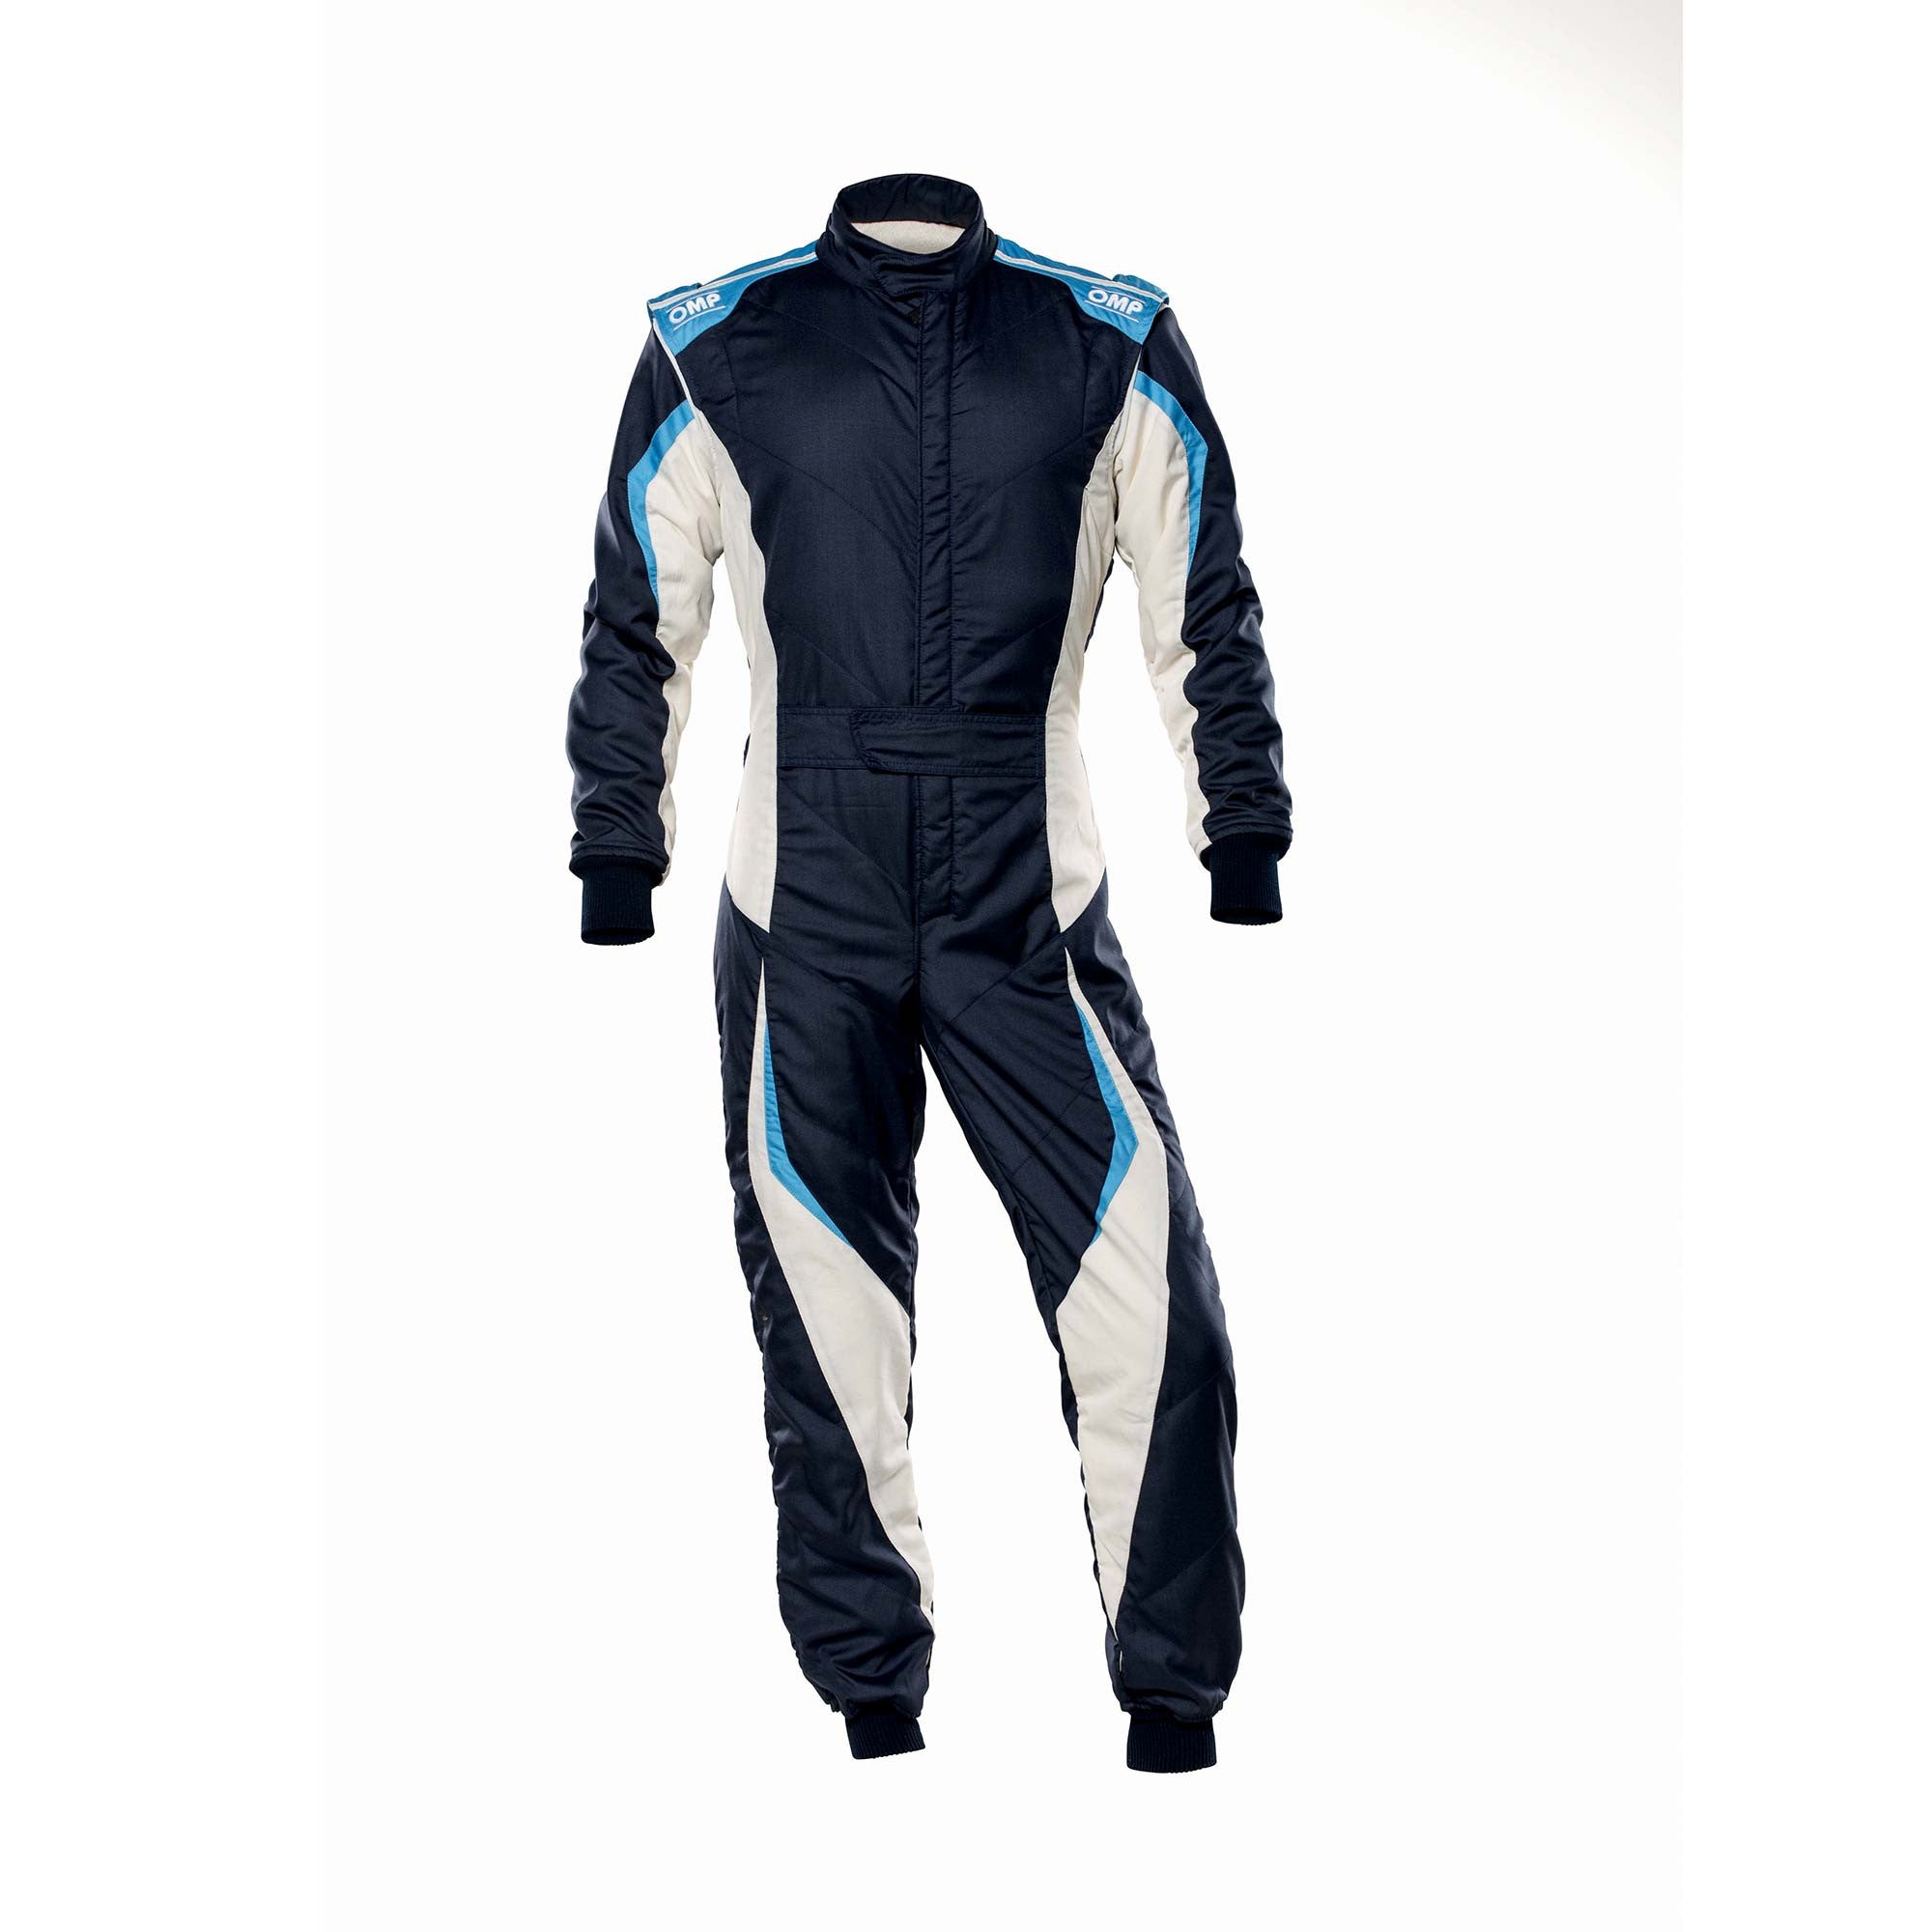 OMP IA0-1859-B01-246-56 Racing suit TECNICA EVO MY2021, FIA 8856-2018, navy blue/white/grey/cyan, size 56 Photo-0 